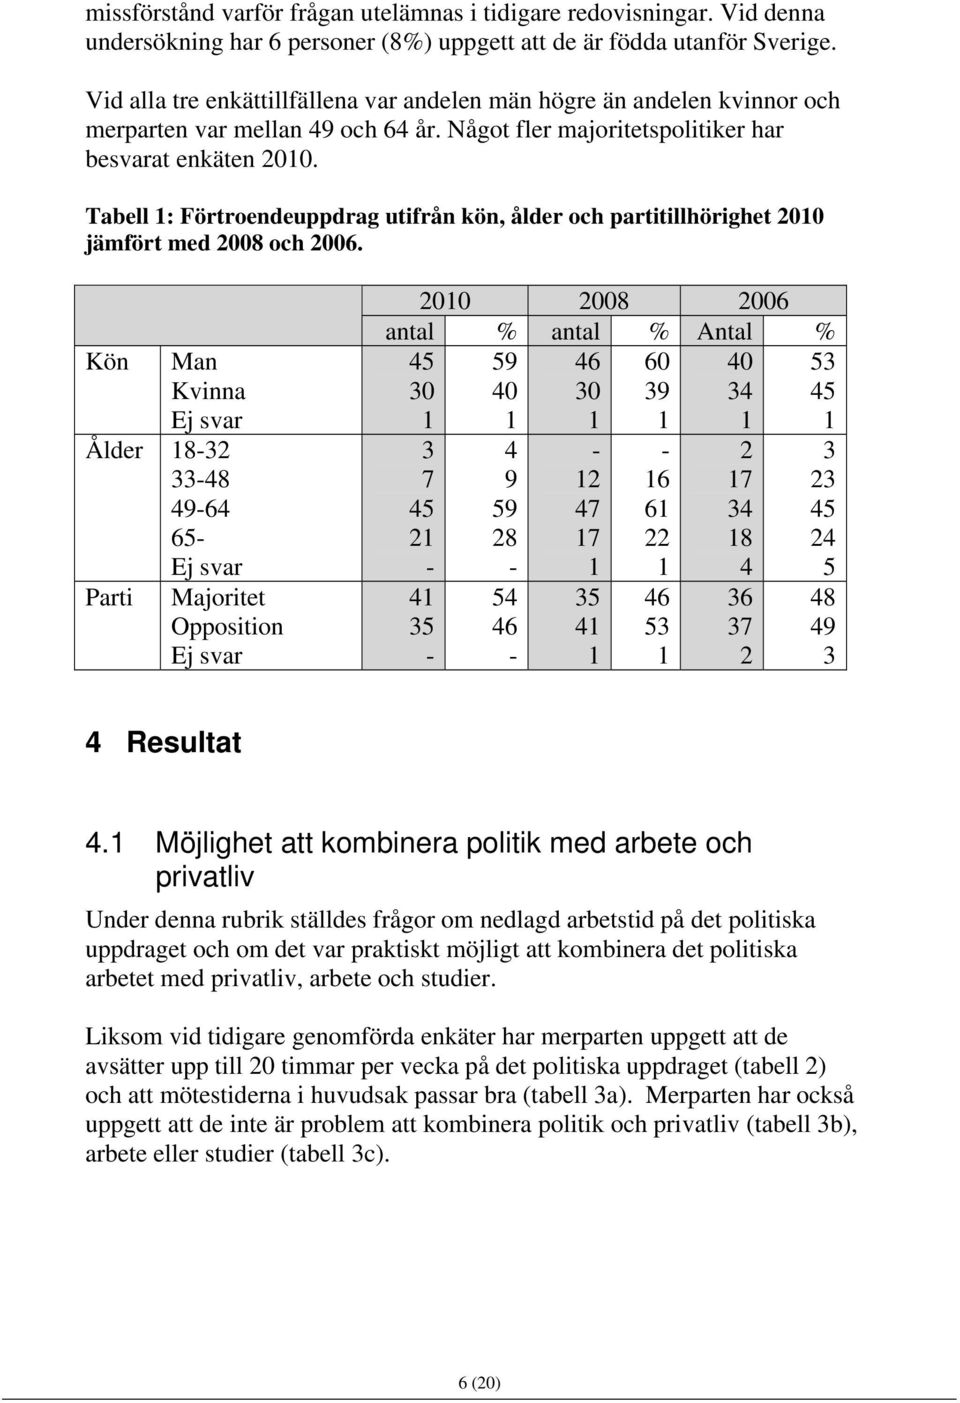 Tabell 1: Förtroendeuppdrag utifrån kön, ålder och partitillhörighet 2010 jämfört med 2008 och 2006.